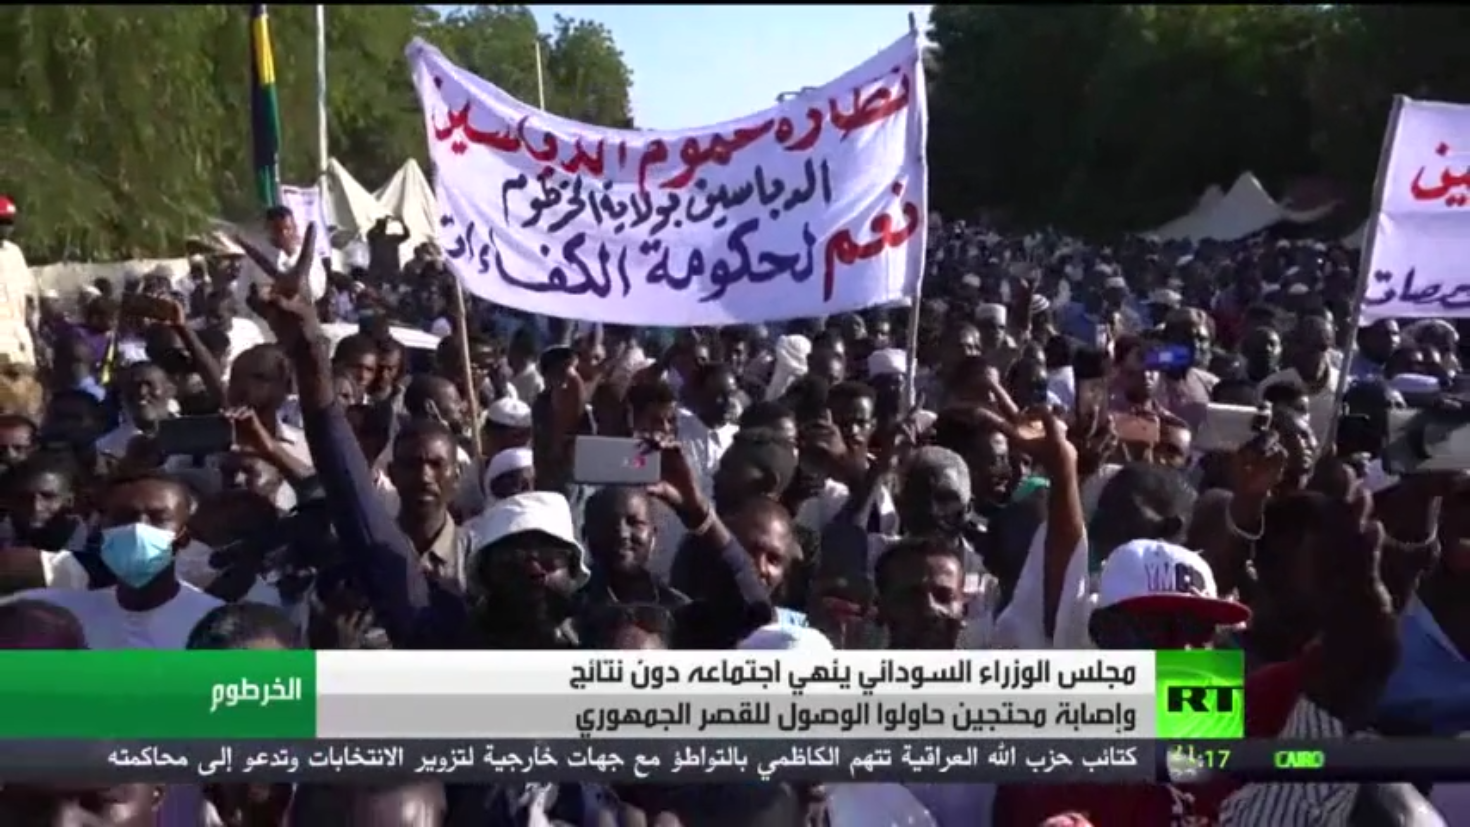 مصادر: المبعوث الأمريكي يزور السودان مع اشتداد الأزمة السياسية